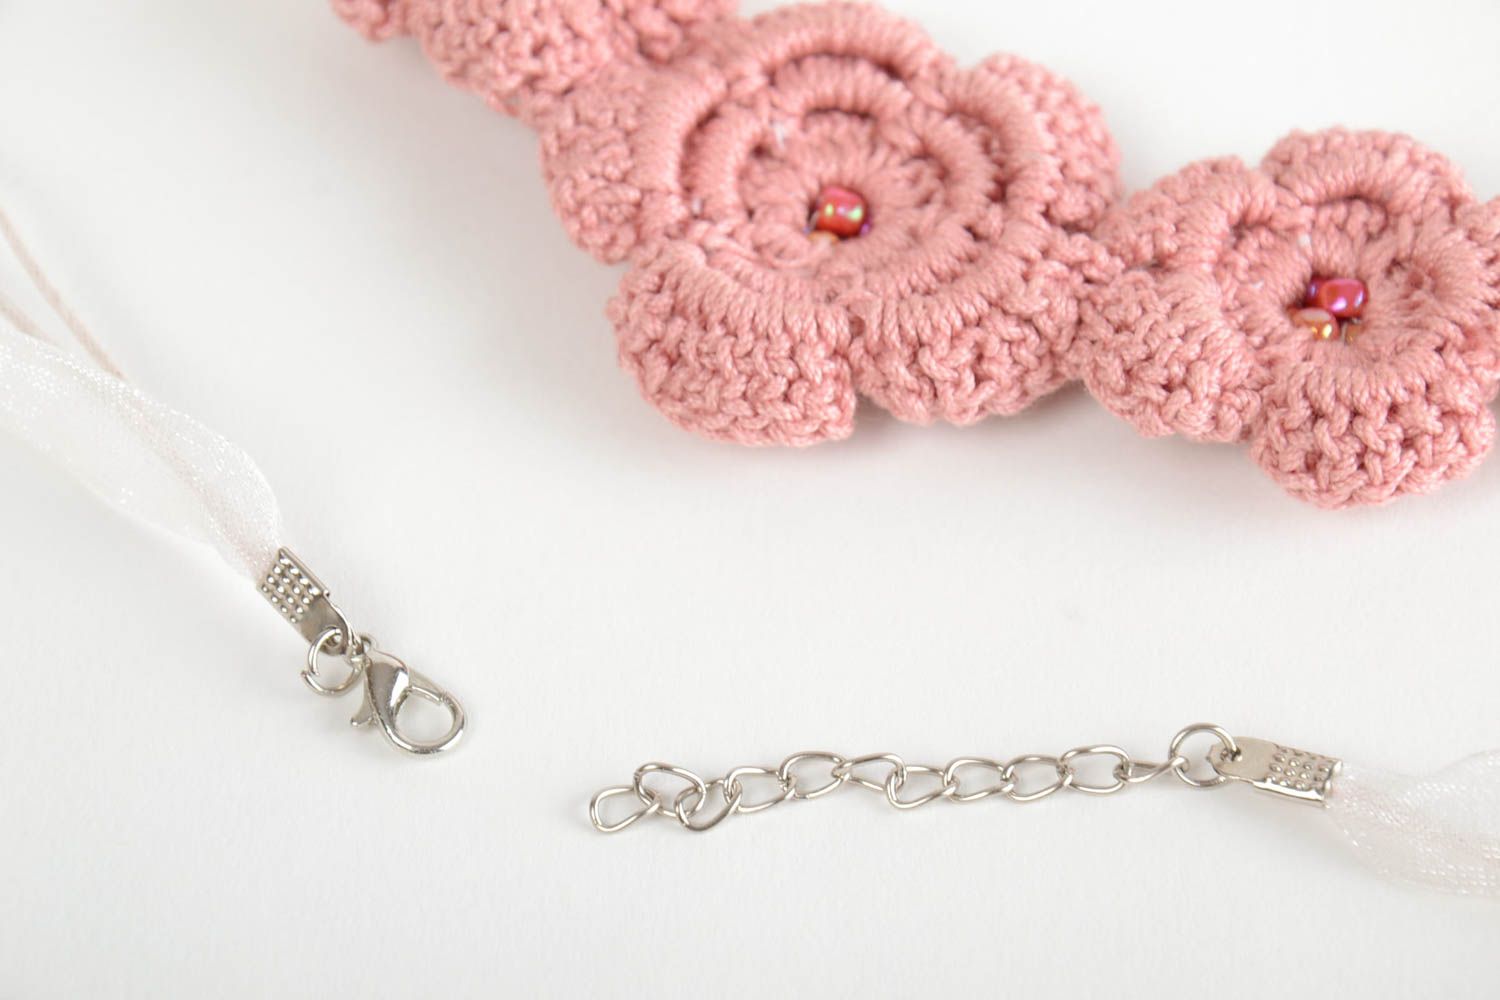 Textil Collier mit Blumen in Rosa gehäkelt mit Glasperlen handmade für Frauen foto 4